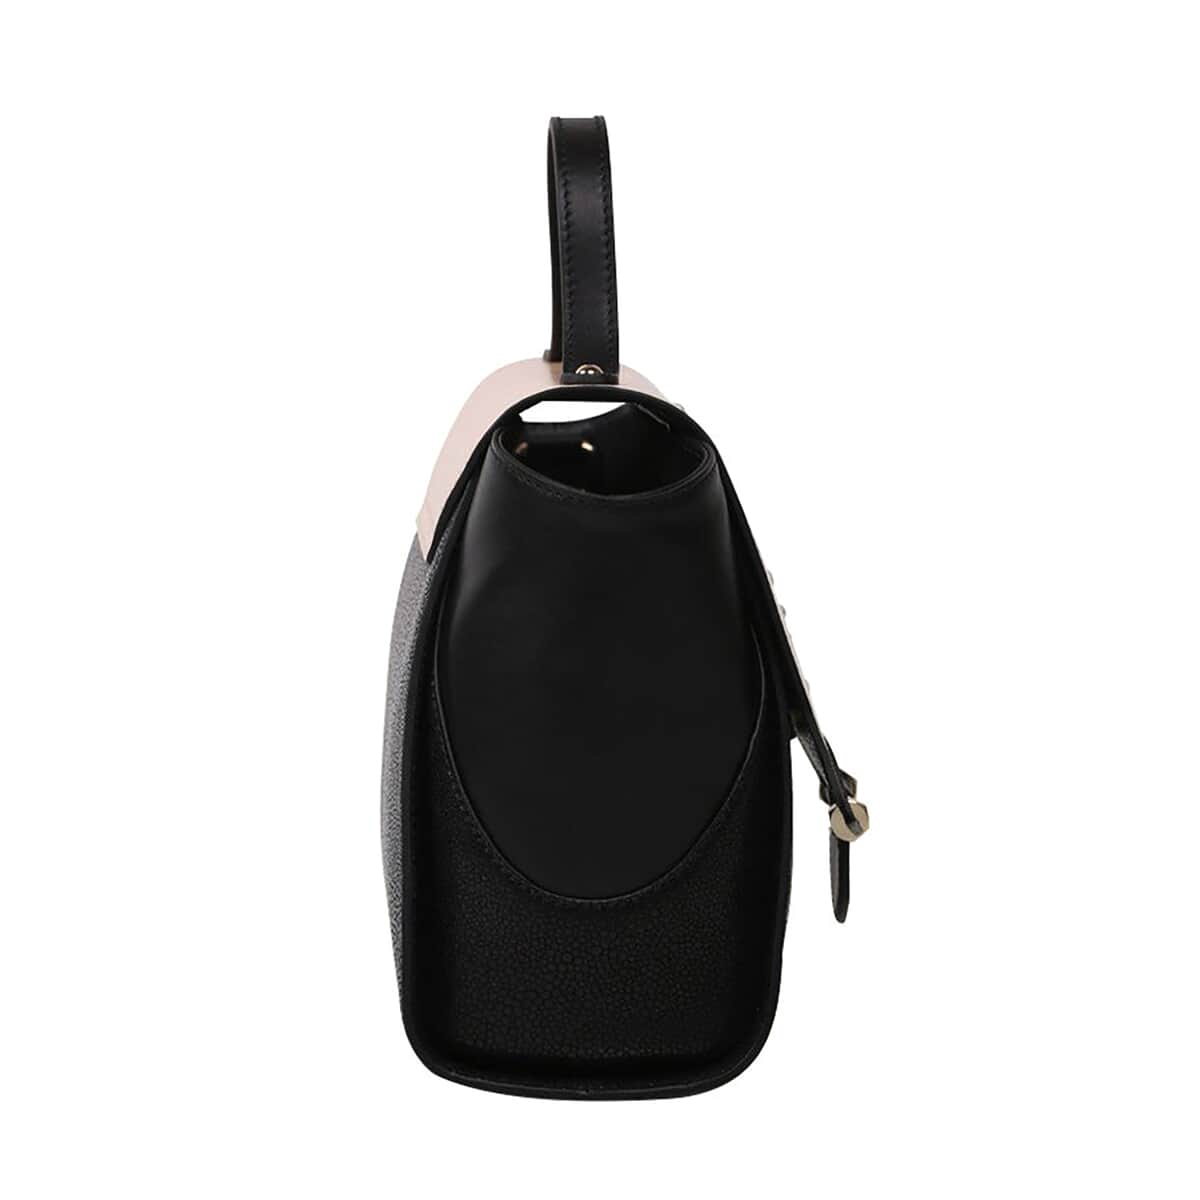 Bellorita-Koi Fish Small Black Top Grain Leather Satchel | Leather Satchel Bag for Women | Leather Purse Handbag image number 6